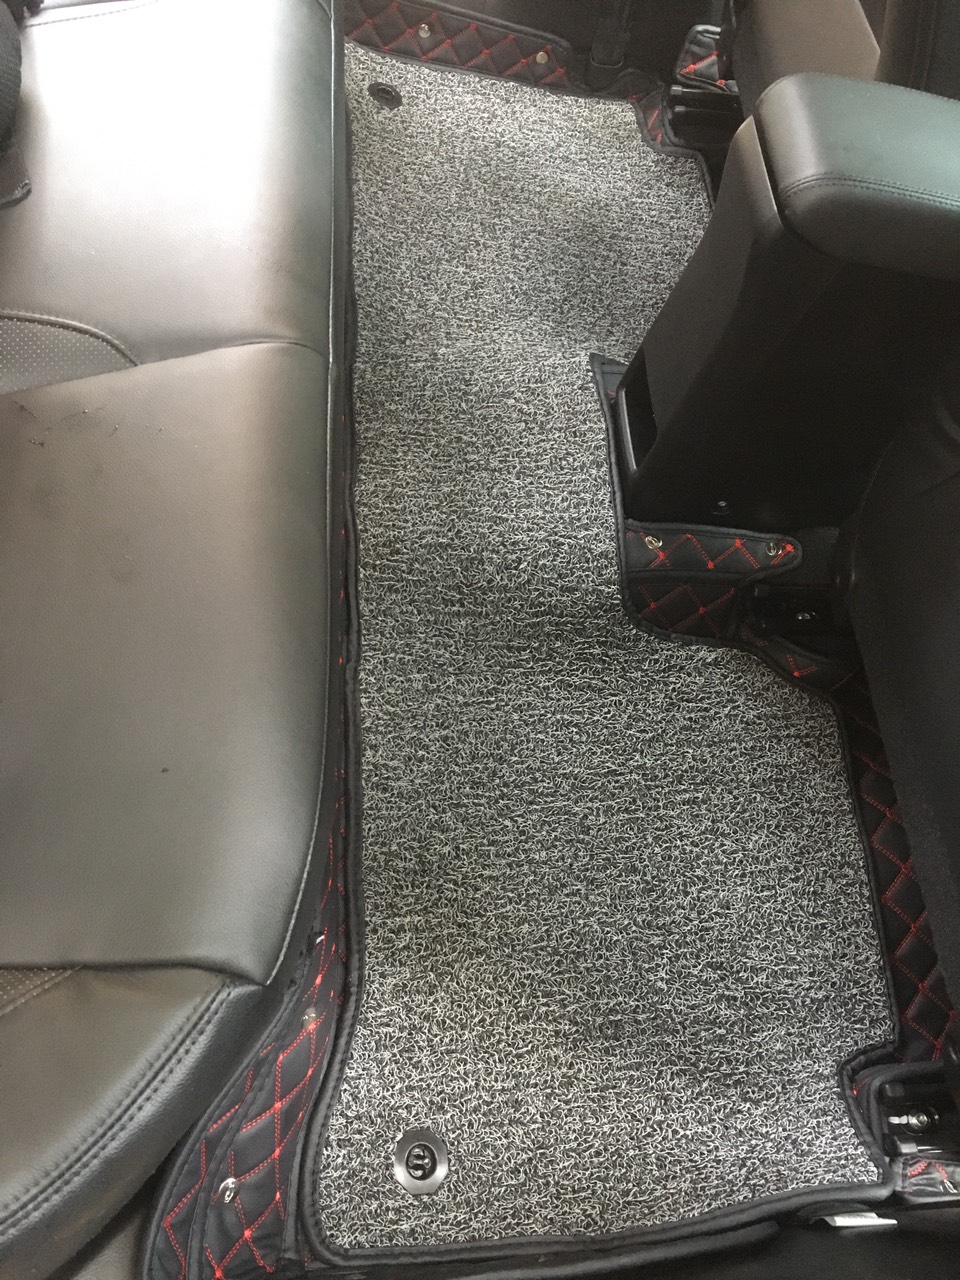 Thảm sàn ô tô 6D dành cho xe Suzuki Ciaz 2018 5 cho da Thường màu T2.2 + R3 hình ảnh thật chụp bằng điện thoại không chỉnh sửa có video hướng dẫn lắp đặt tại nhà